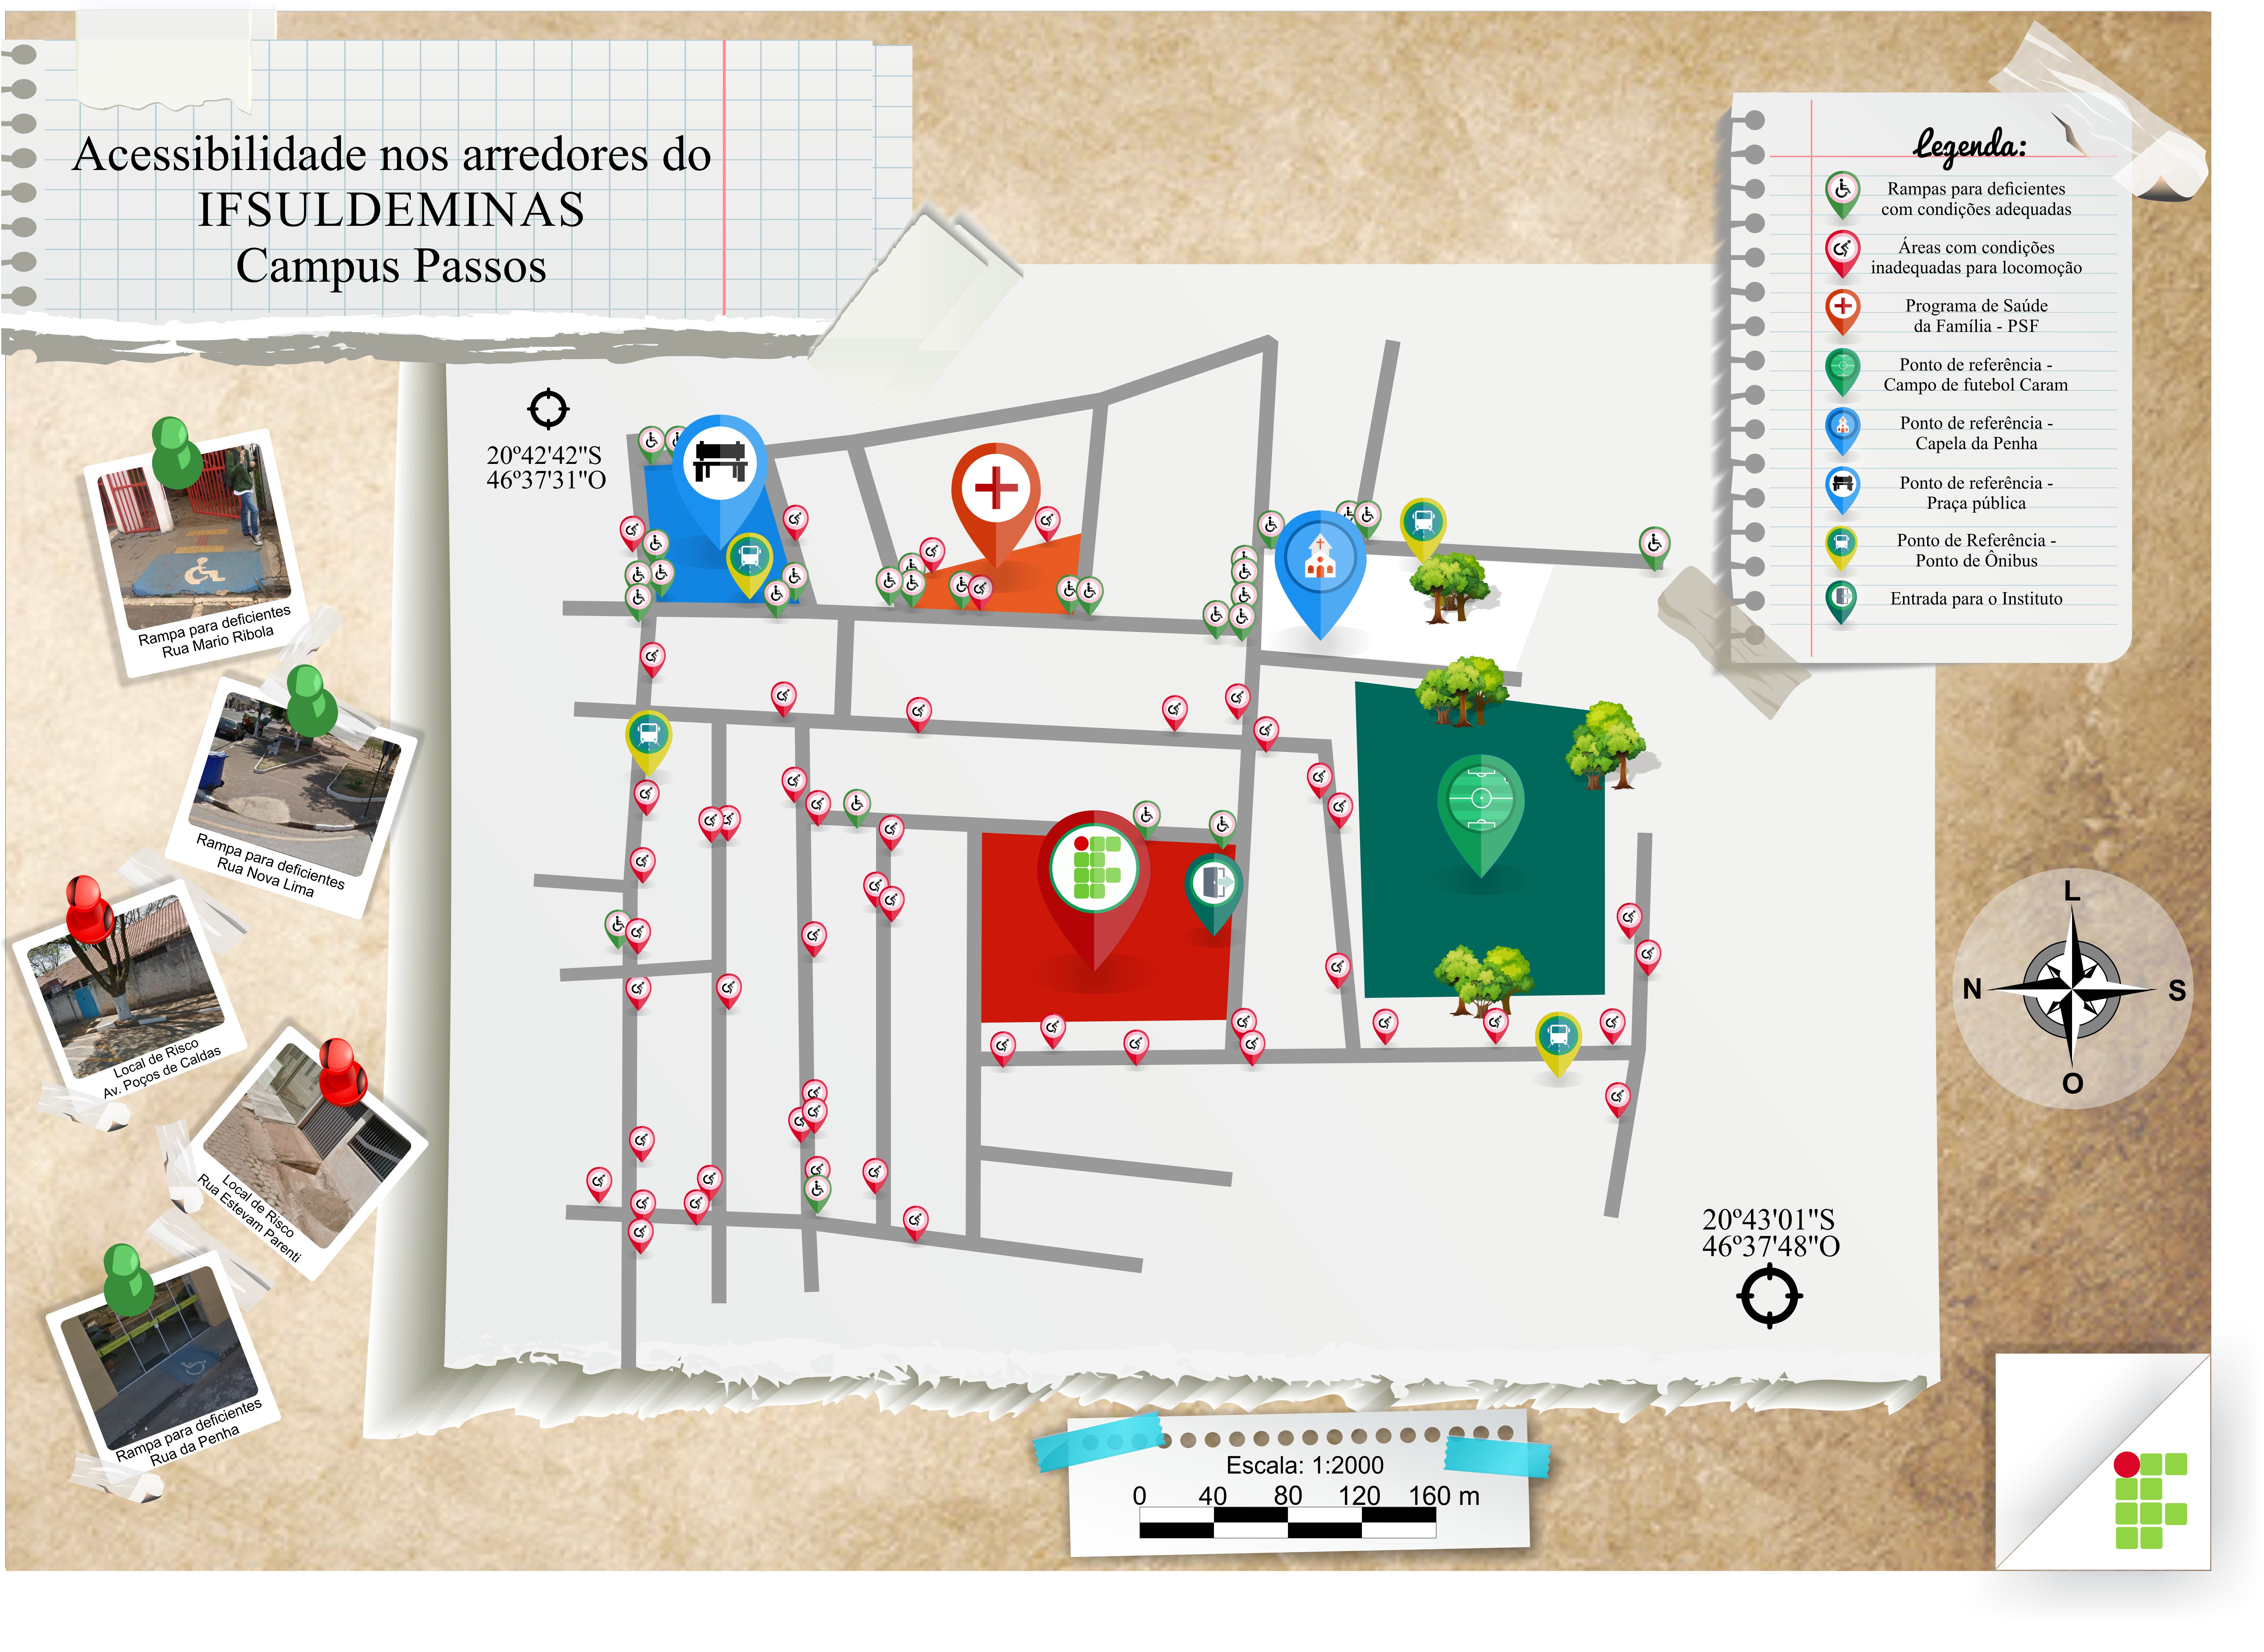 Mapa Digital produzido pelos alunos